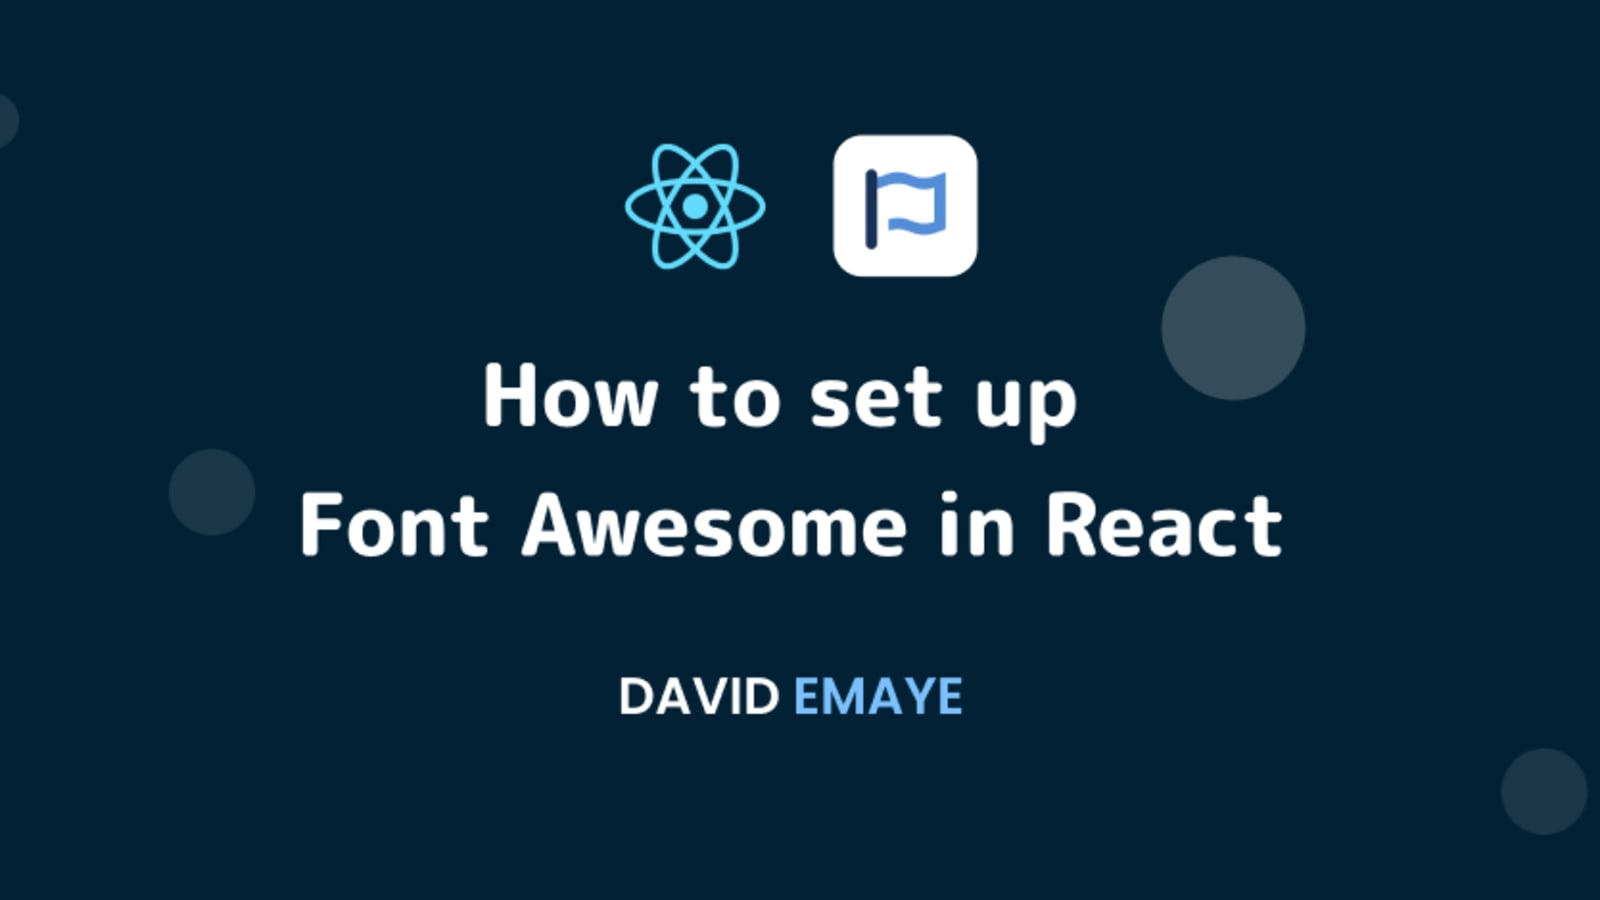 Cài đặt Font Awesome cho dự án React giúp bạn trang trí cho trang web của mình một cách hoàn chỉnh hơn. Font Awesome đem lại rất nhiều biểu tượng độc đáo mang lại cho trang web của bạn một cái nhìn mới lạ và độc đáo hơn. Kết hợp với React Framework, Font Awesome giúp cho việc phát triển trang web dễ dàng hơn, đồng thời mang lại hiệu suất tốt hơn cho trang web của bạn.